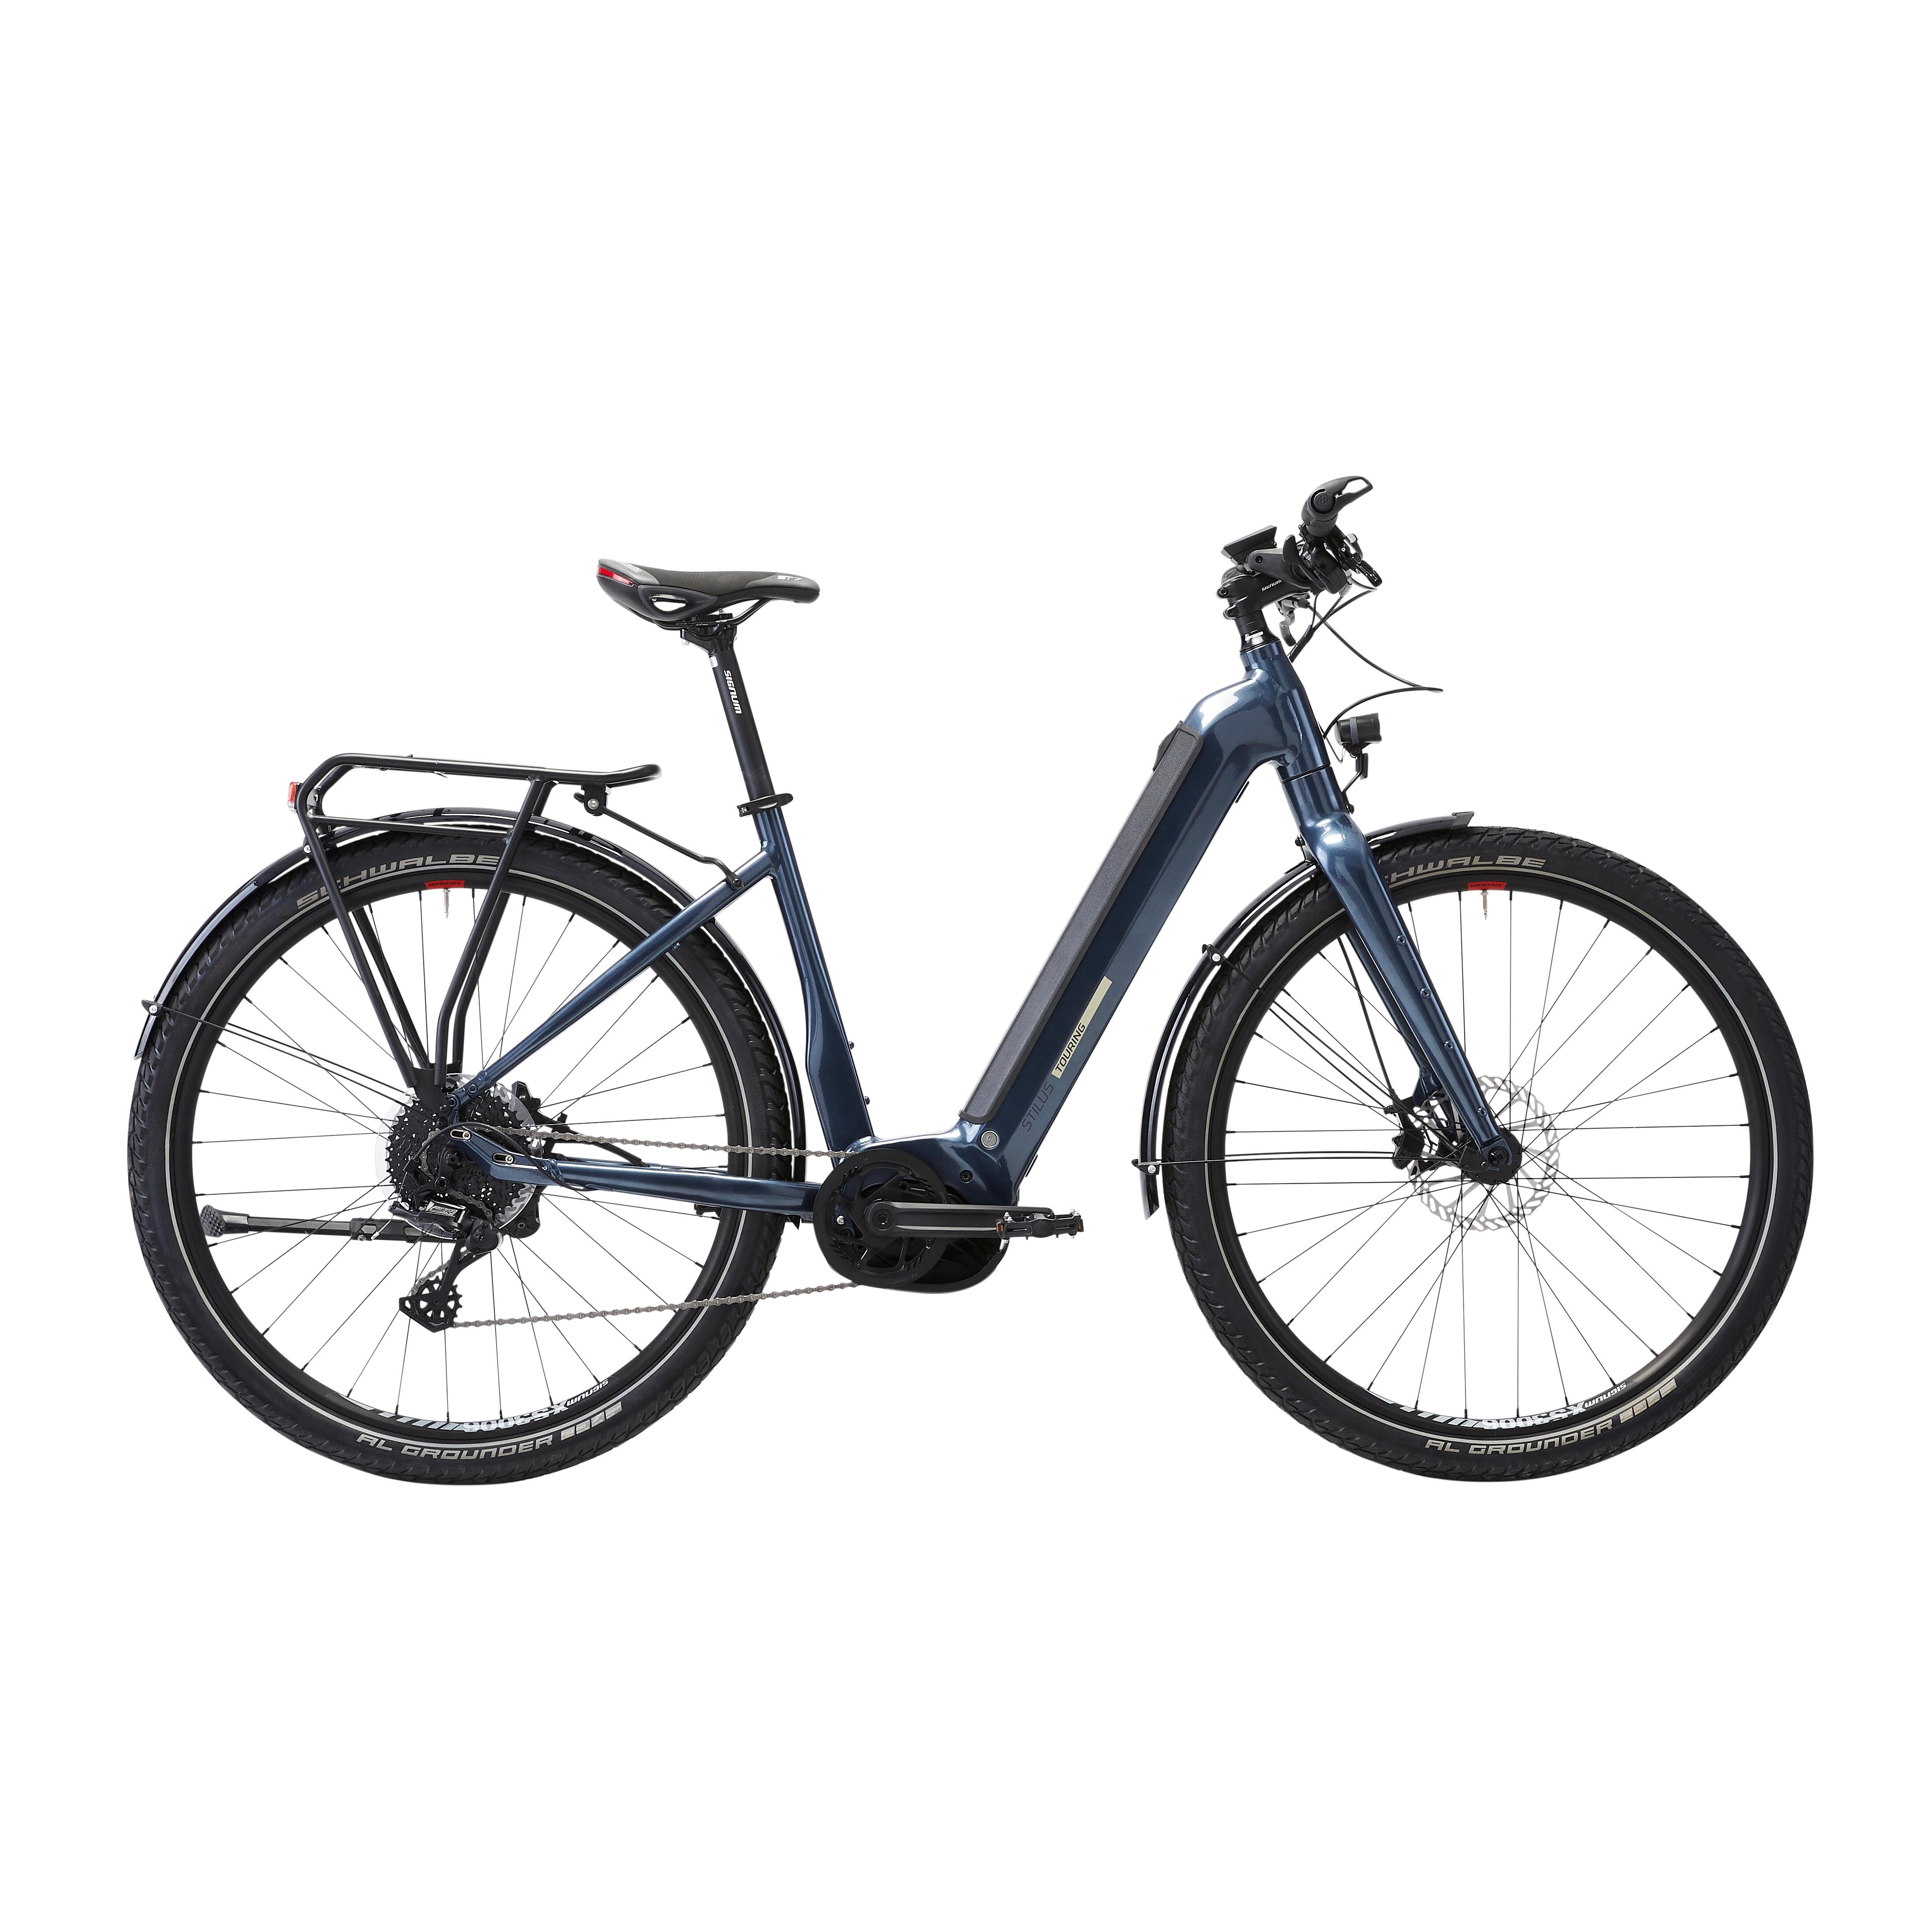 Bicicletă electrică de călătorie cu motor central puternic Bosch – Stilus E-Touring LF decathlon.ro imagine noua